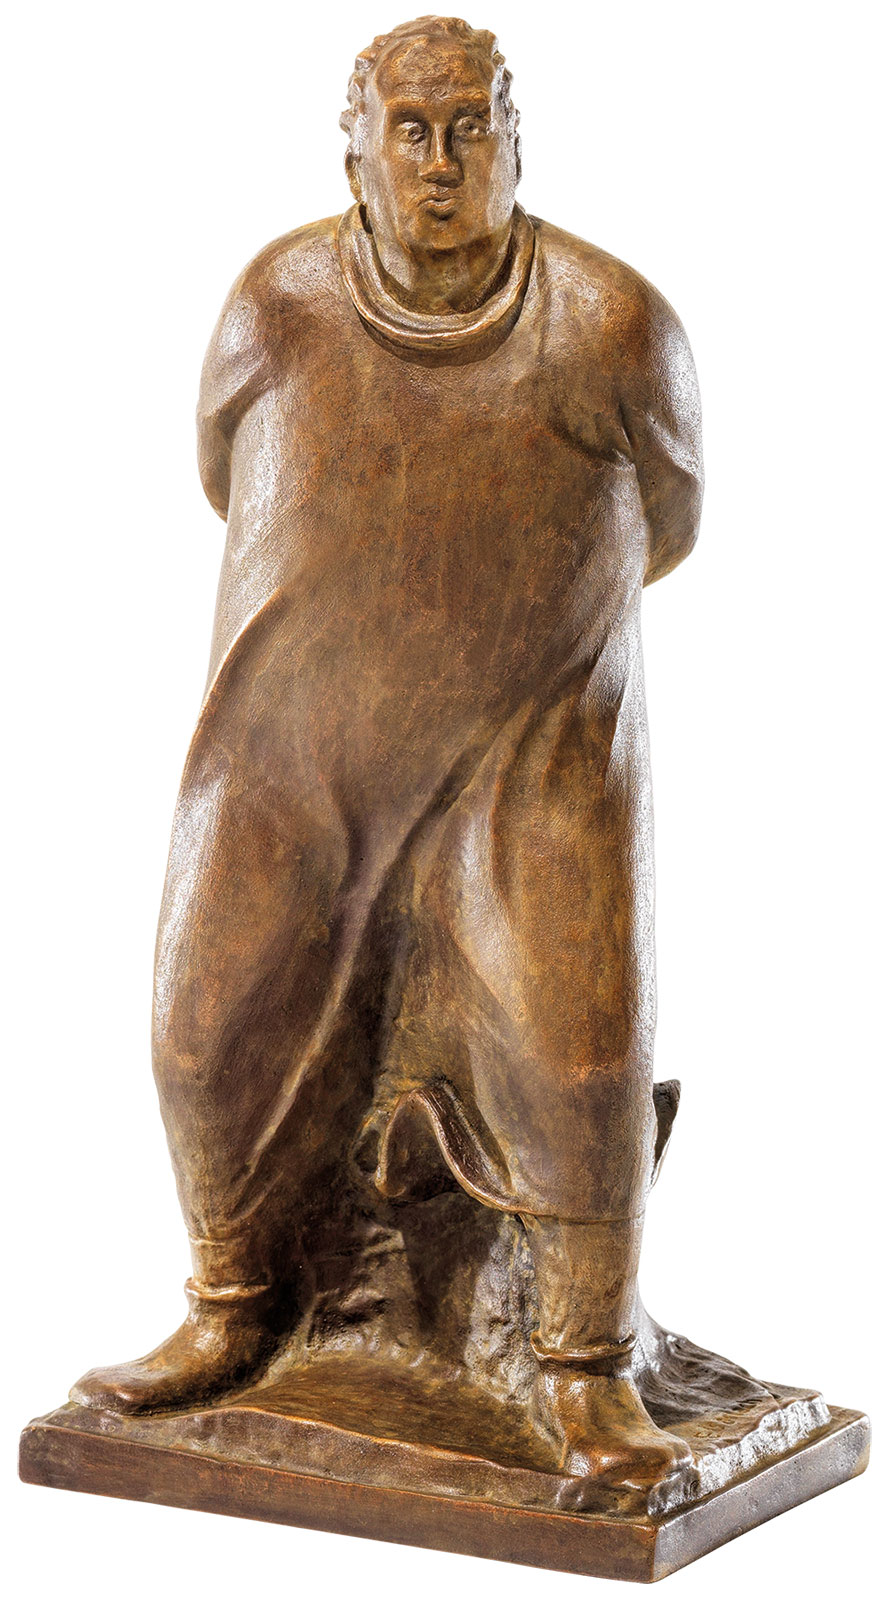 Skulptur "Der Spaziergänger" (1912), Reduktion in Bronze von Ernst Barlach